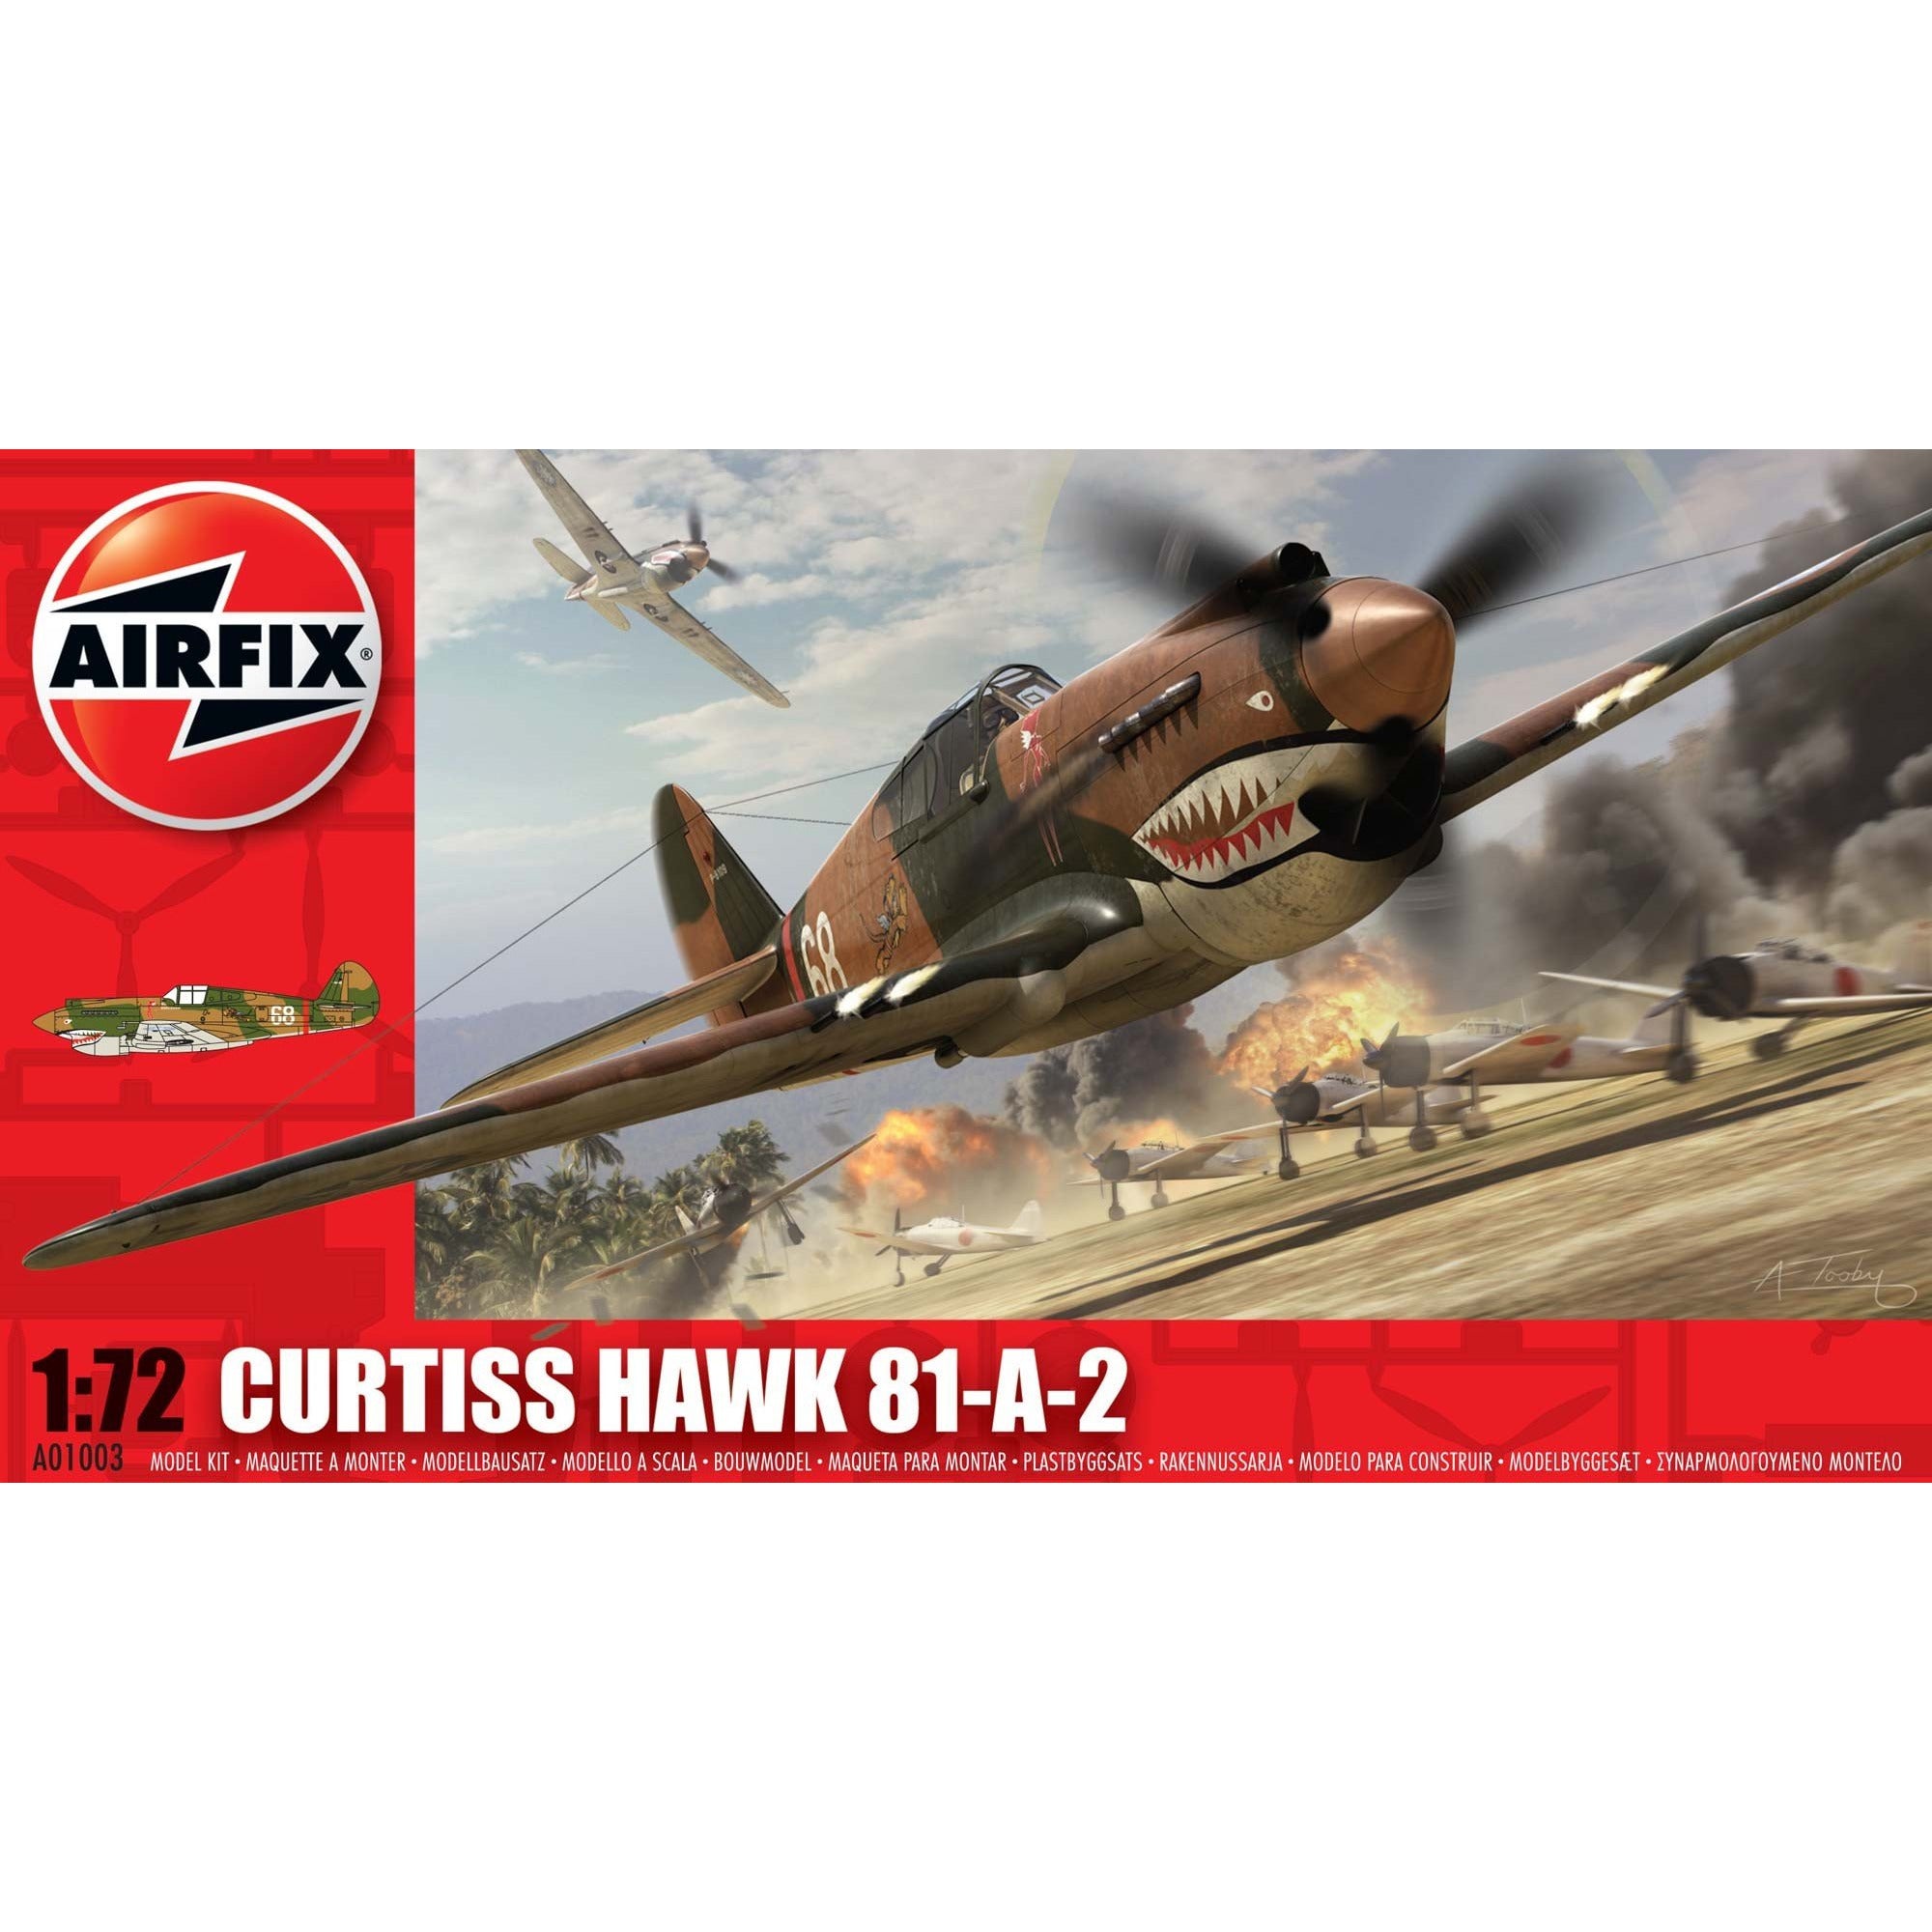 Curtiss Hawk 81-A-2 1/72 by Airfix